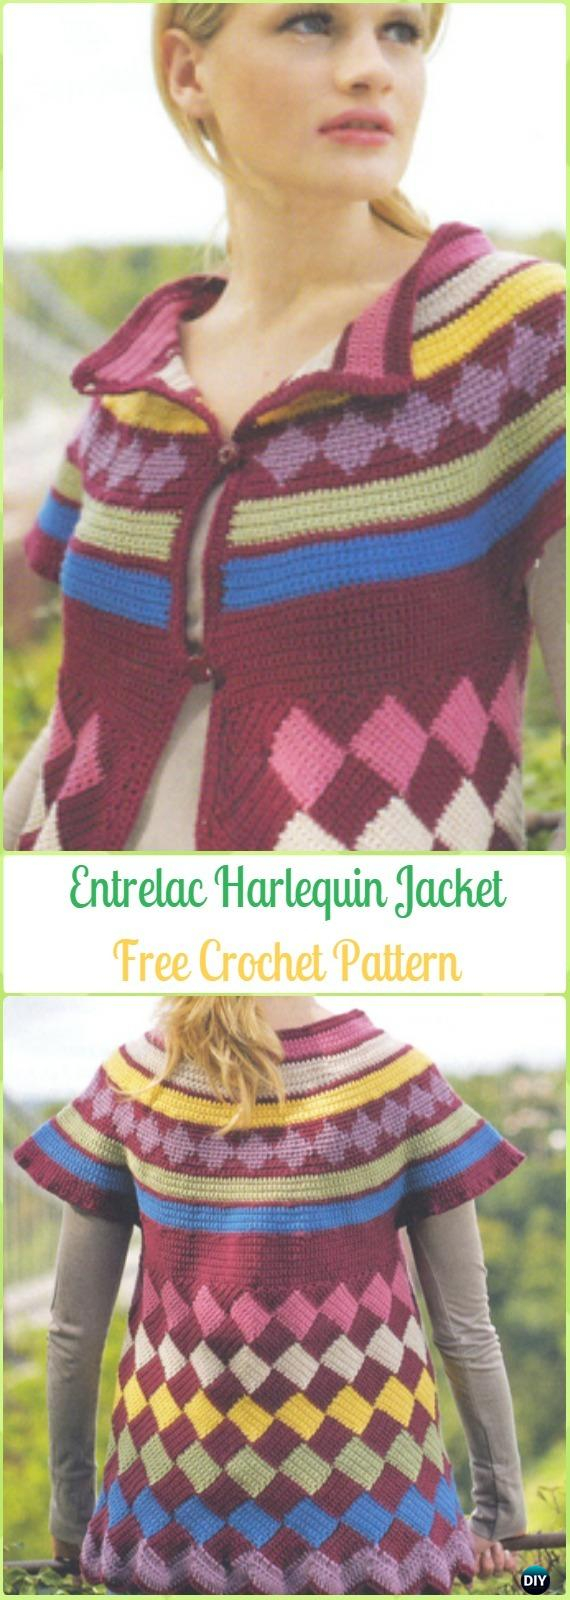 Free Crochet Patterns Womens Sweaters Crochet Women Sweater Coat Cardigan Free Patterns